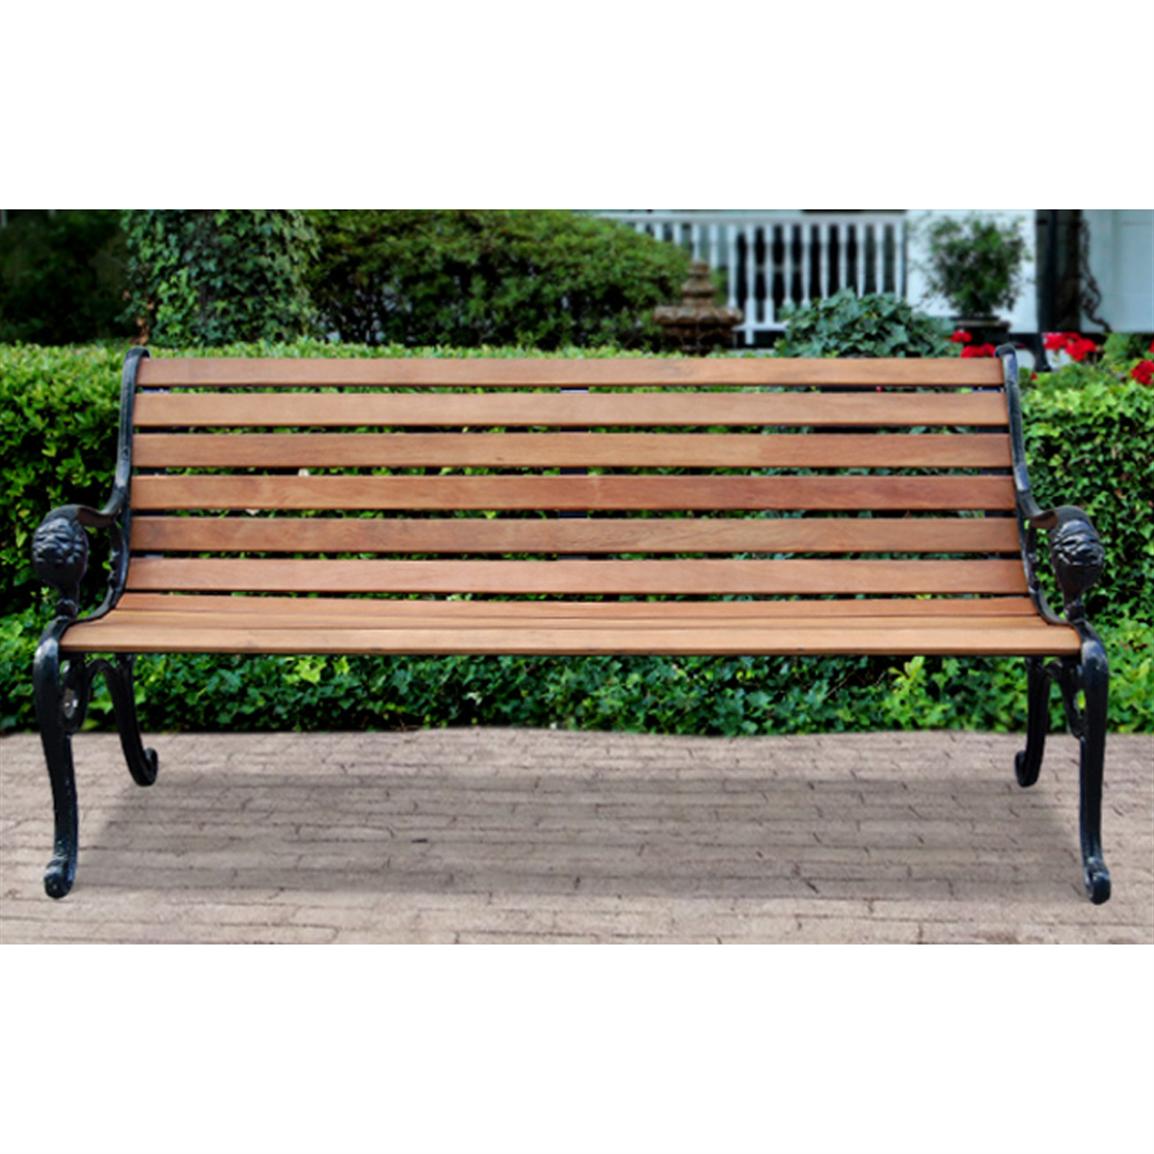 Lion Park Bench - Cast Iron Ends - 232005, Patio Furniture 